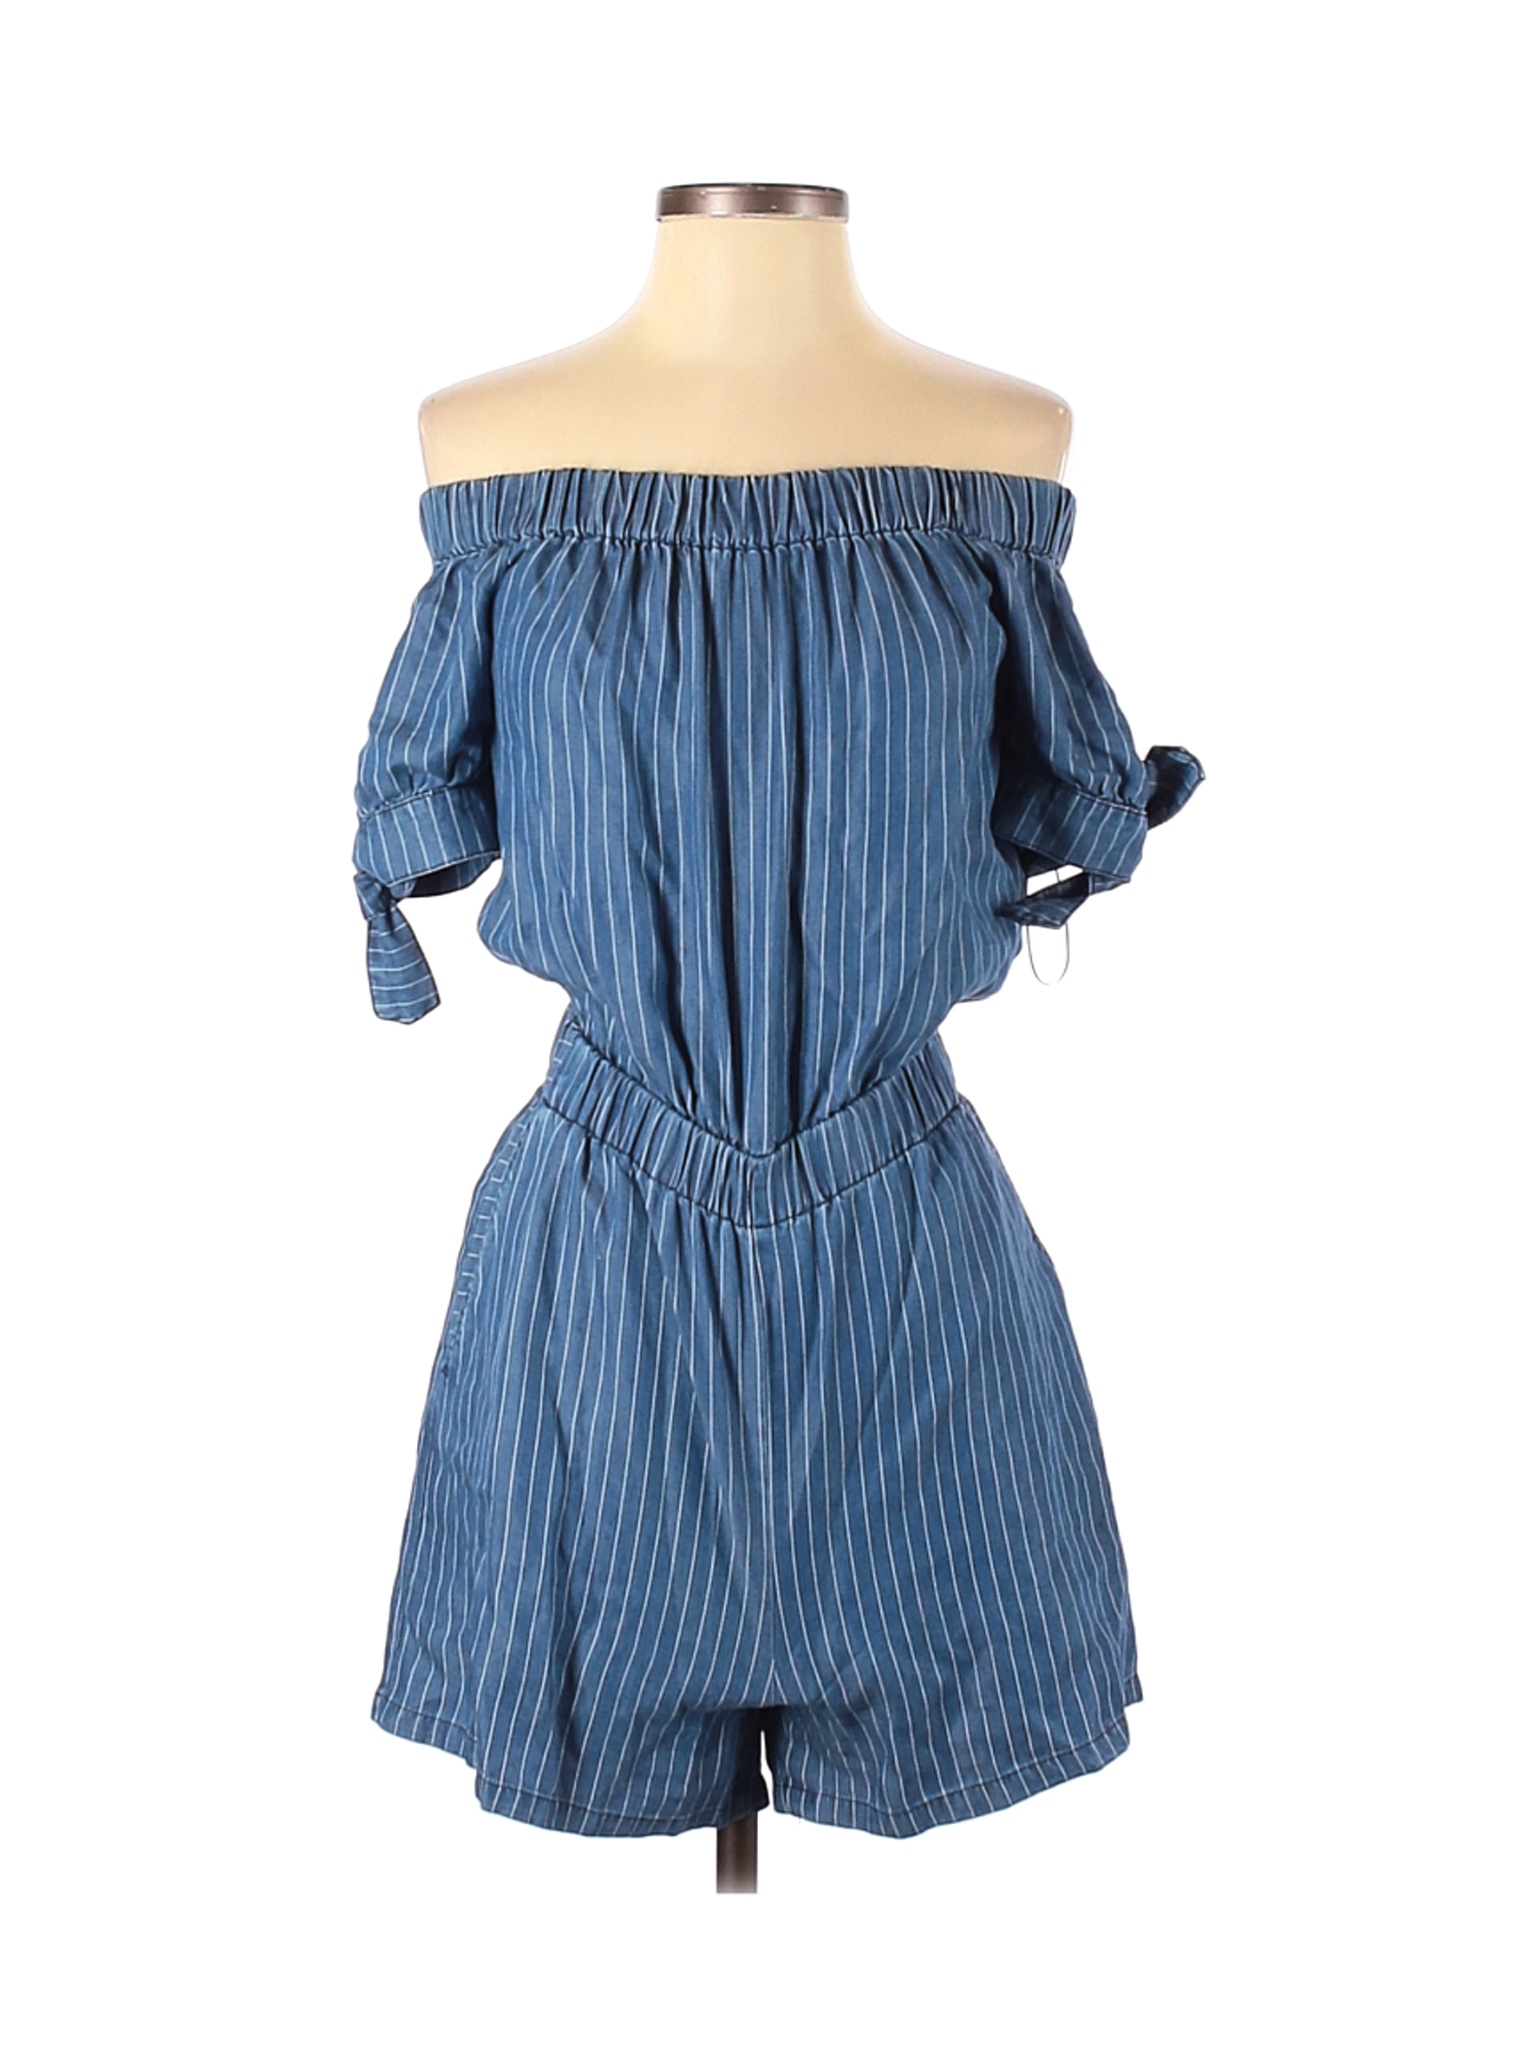 Zara Women Blue Romper XS | eBay